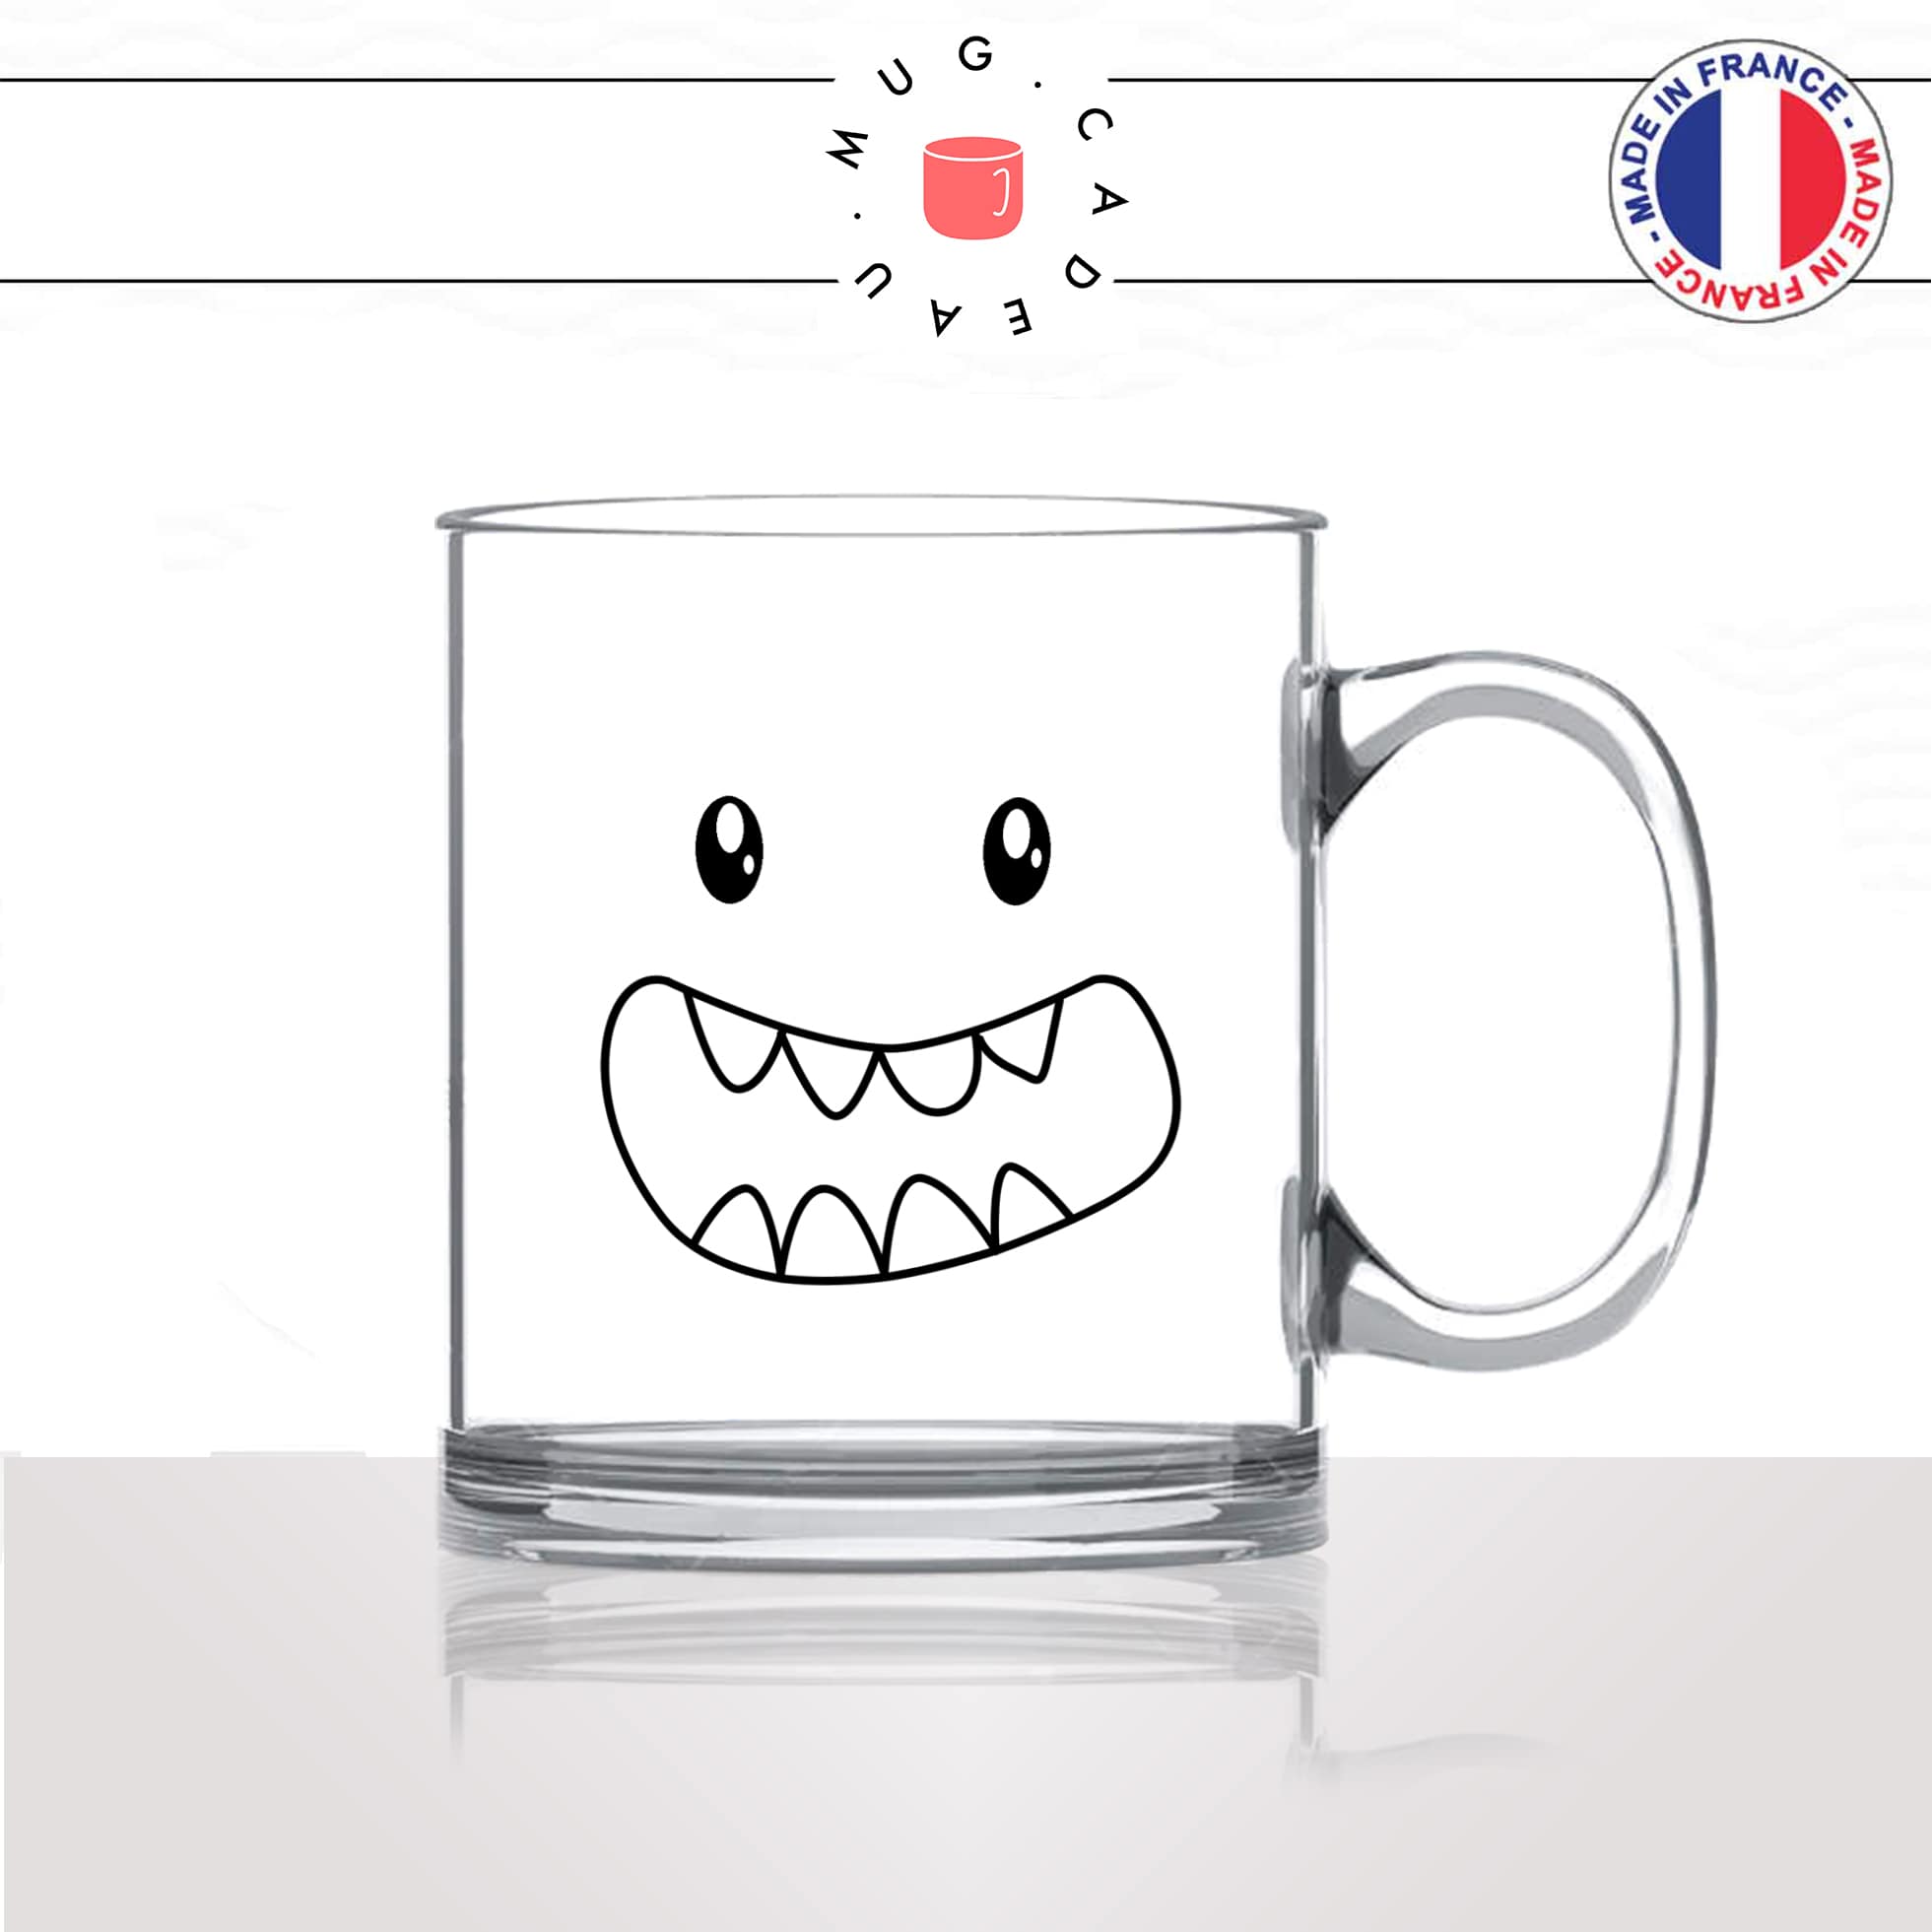 tasse-mug-en-verre-transparent-glass-monstre-gentil-dents-enfant-kawaii-dessin-mignon-animal-noir-fun-café-thé-idée-cadeau-original-personnalisé2-min